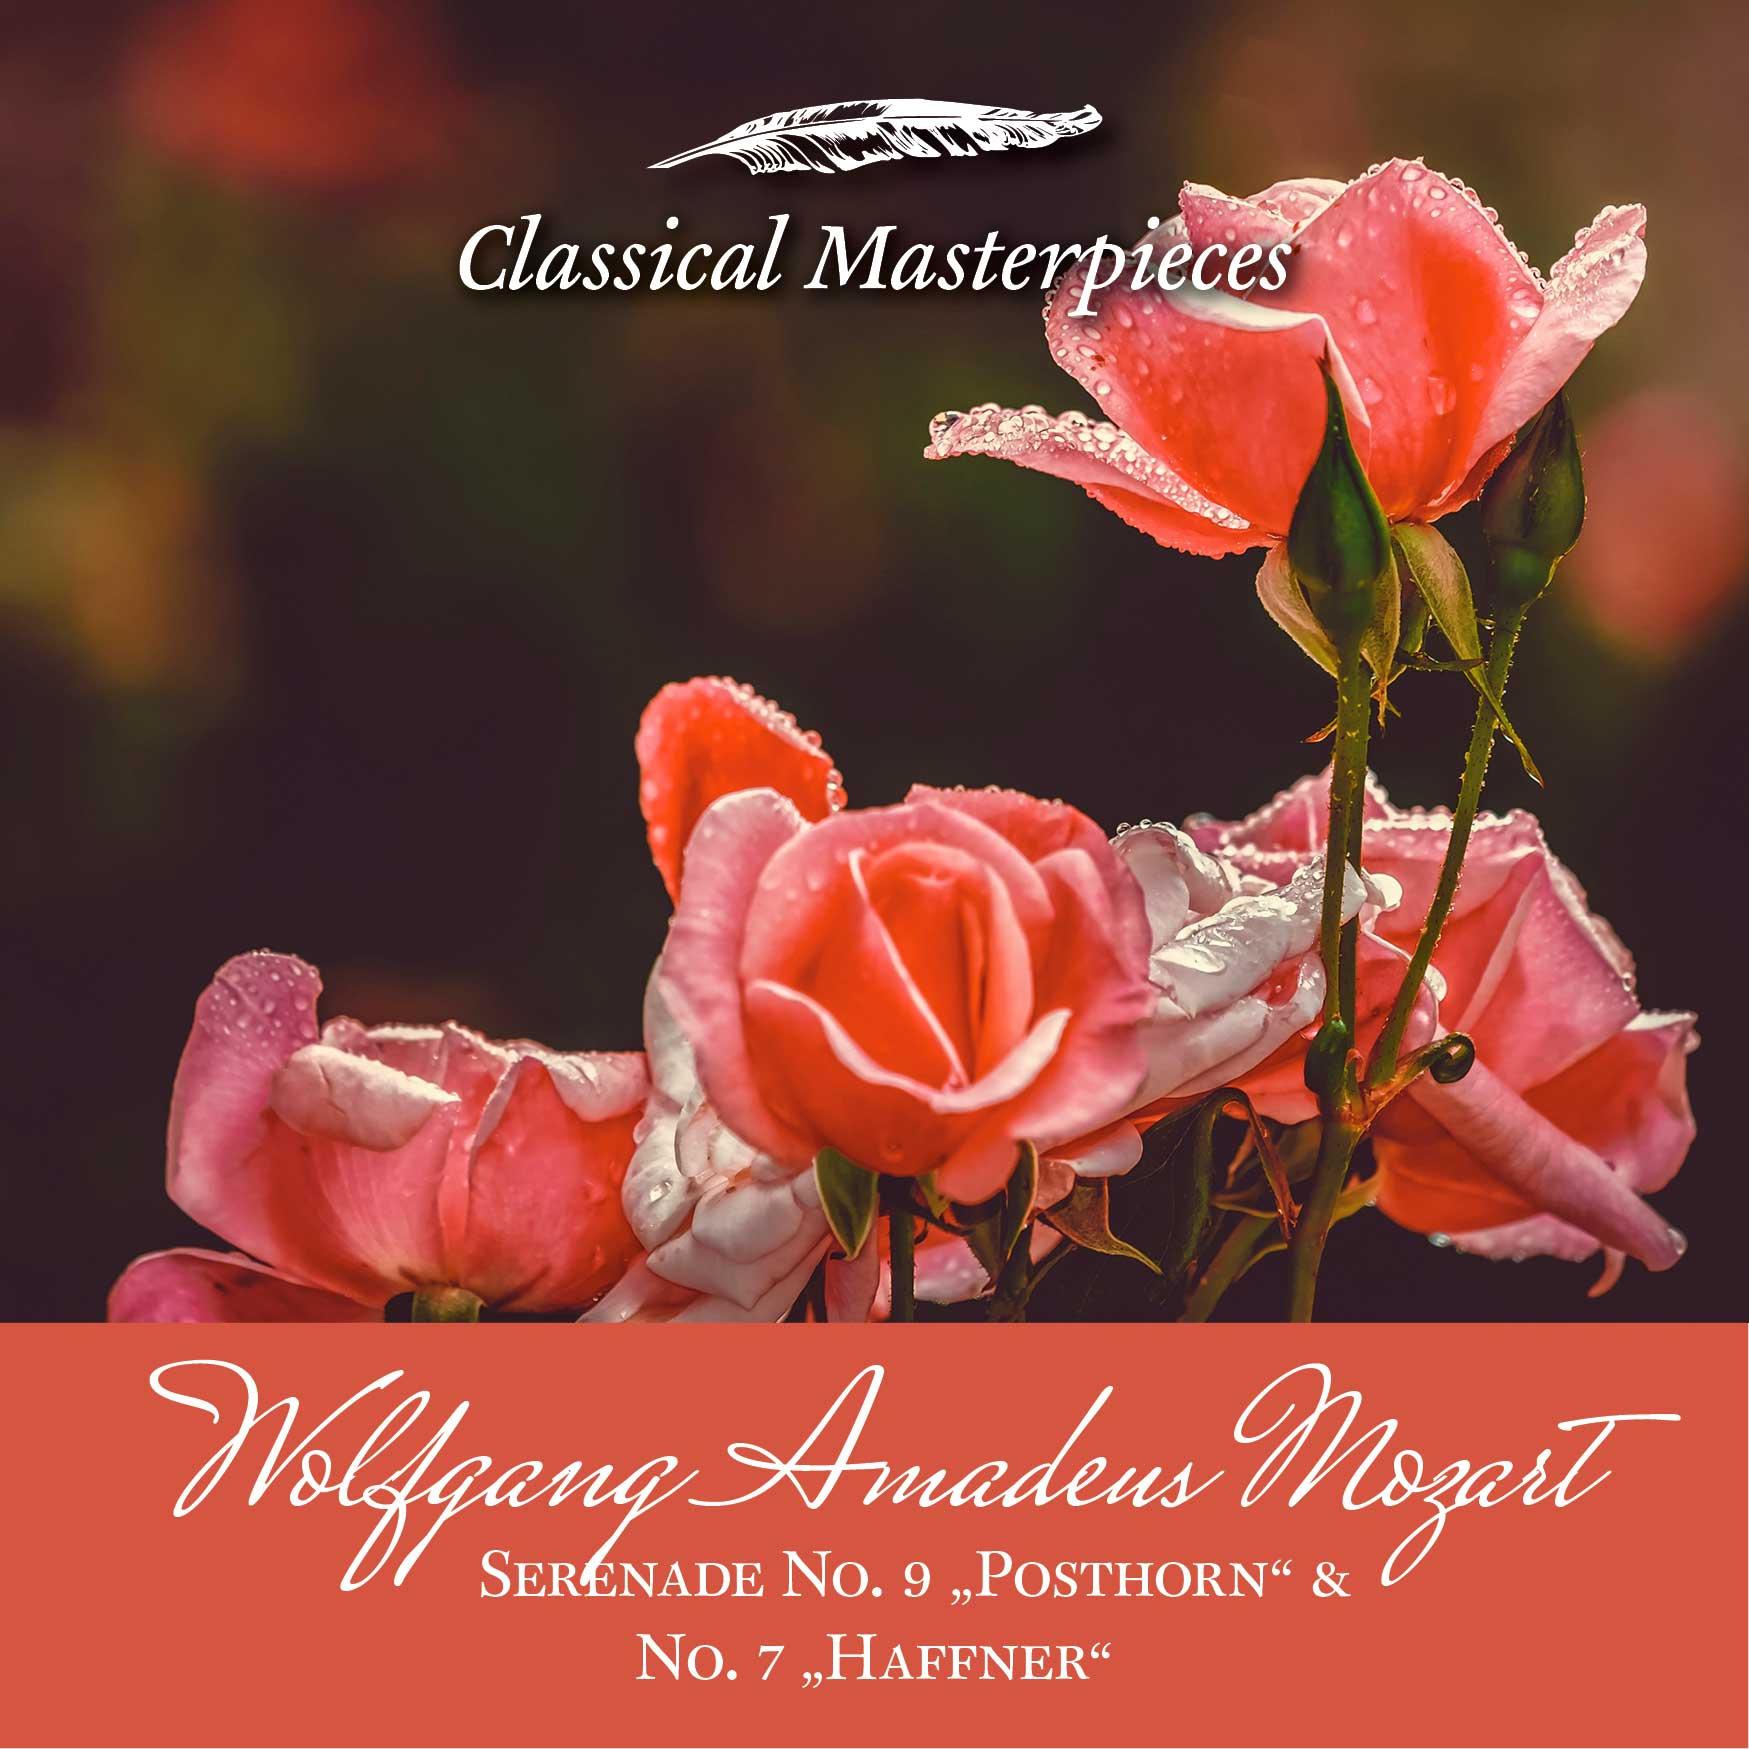 Serenade No. 7 KV250 in DMajor "Haffner":Allegro maestoso. Allegro molto